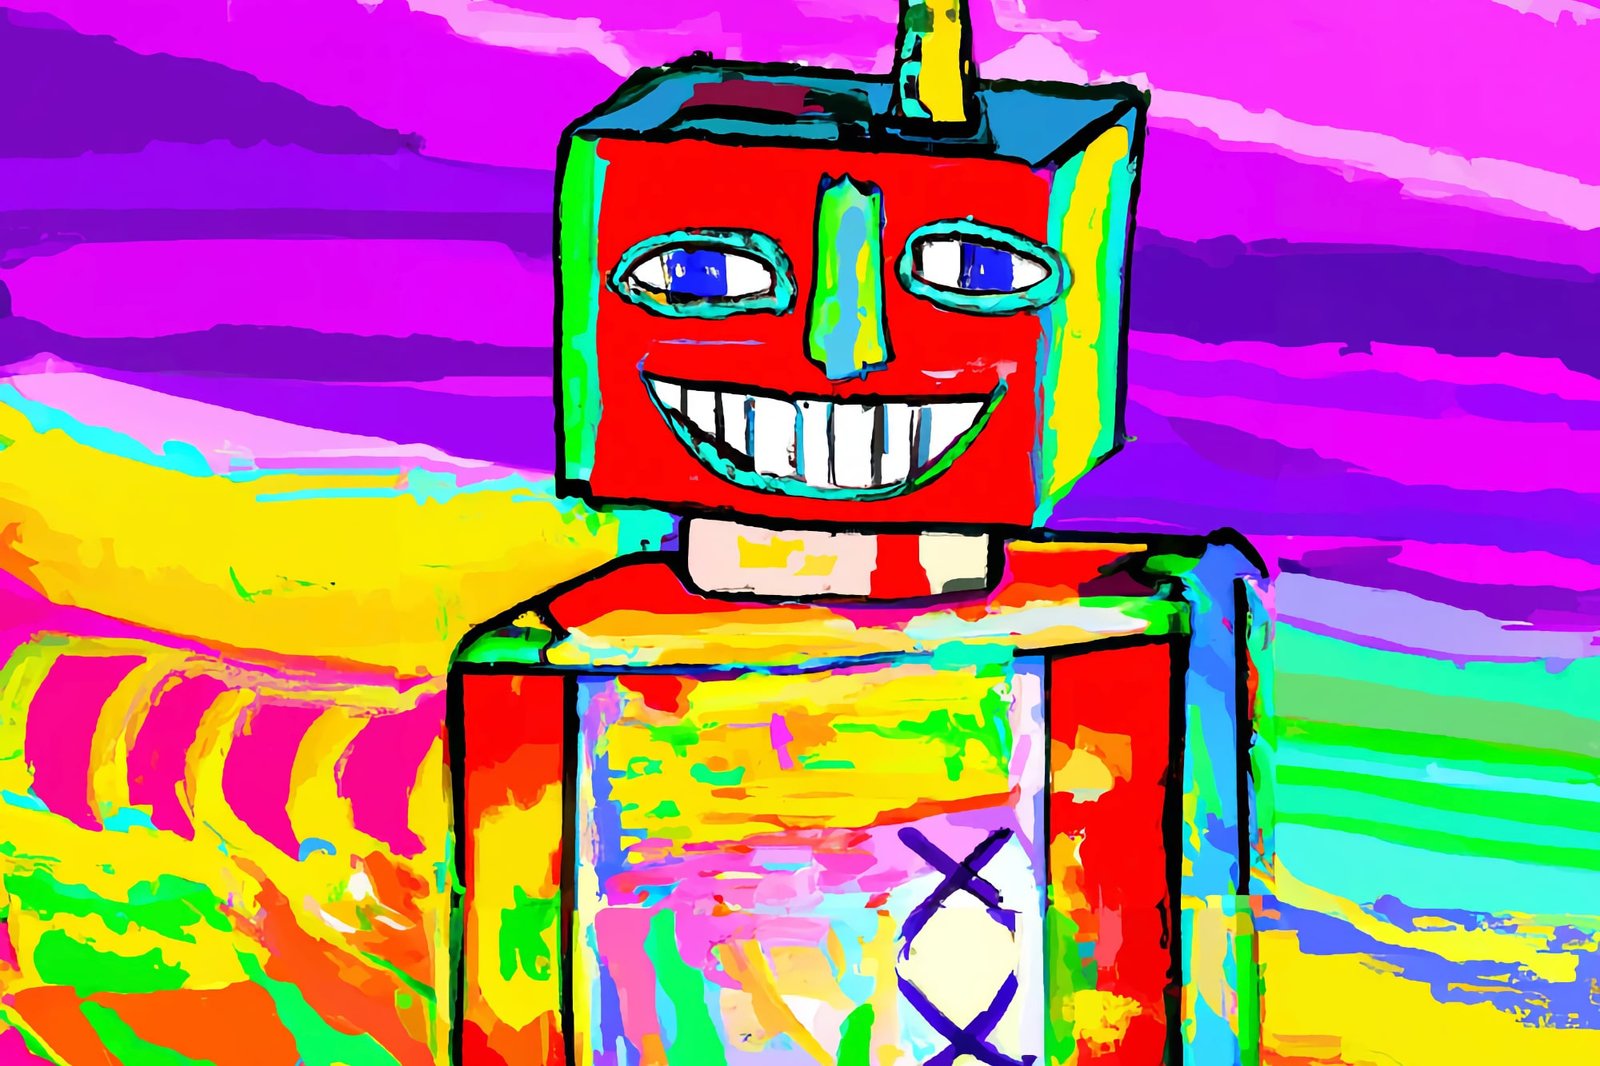 Uma pintura colorida de um robô sorridente, gerada por Dall-E.